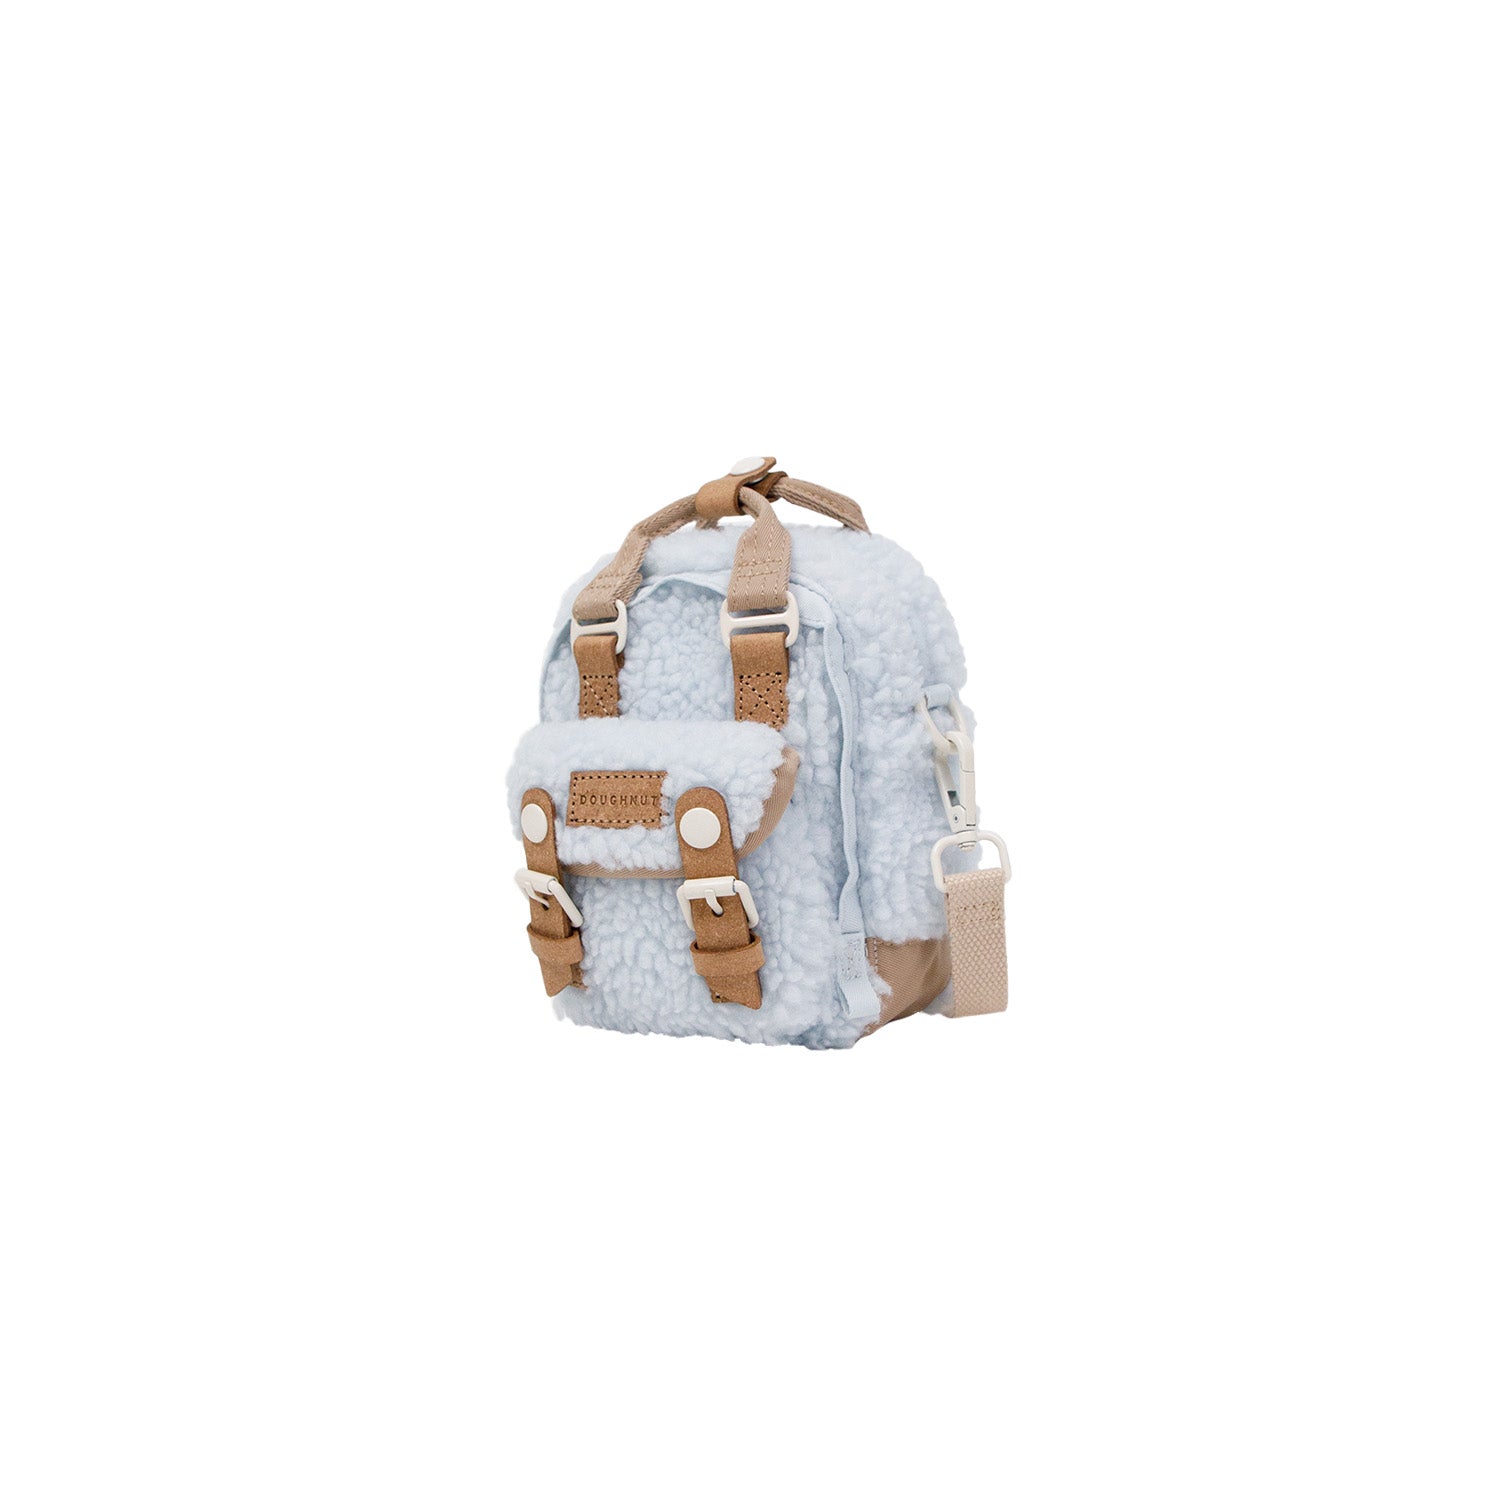 Moshi Lula Crossbody Nano Bag Mini Handbag REVIEW - MacSources